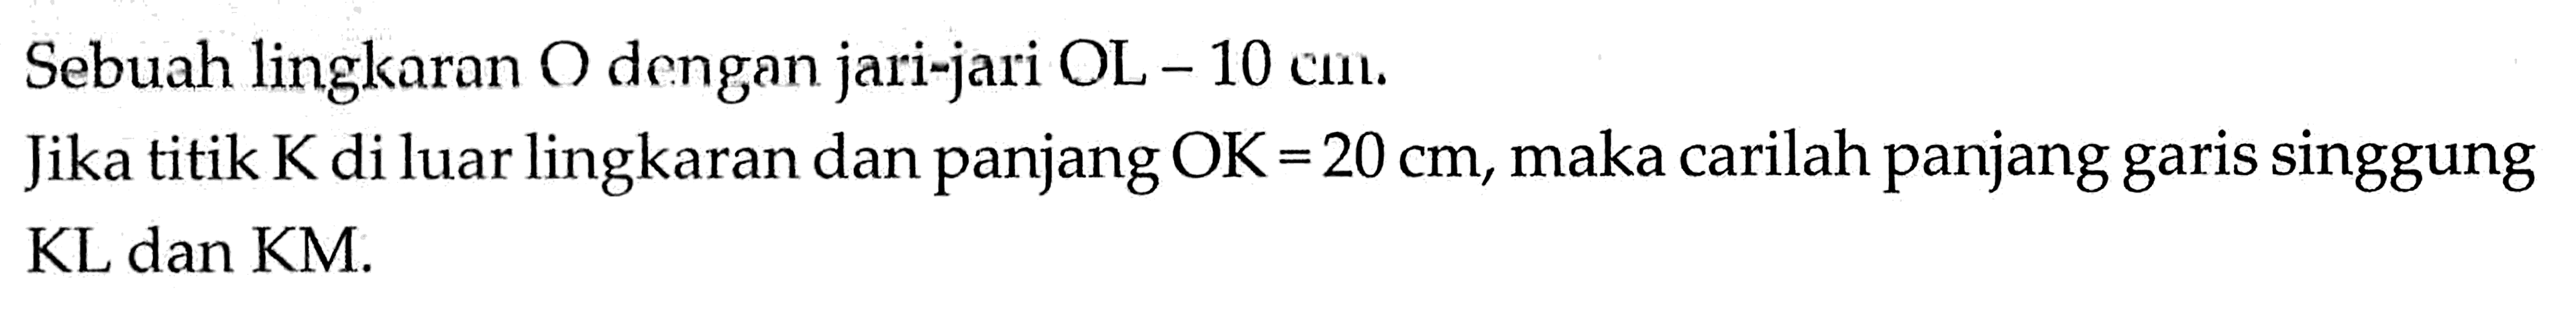 Sebuah lingkaran O dengan jari-jari OL-10 cm. Jika titik K di luar lingkaran dan panjang OK=20 cm, maka carilah panjang garis singgung KL dan KM.